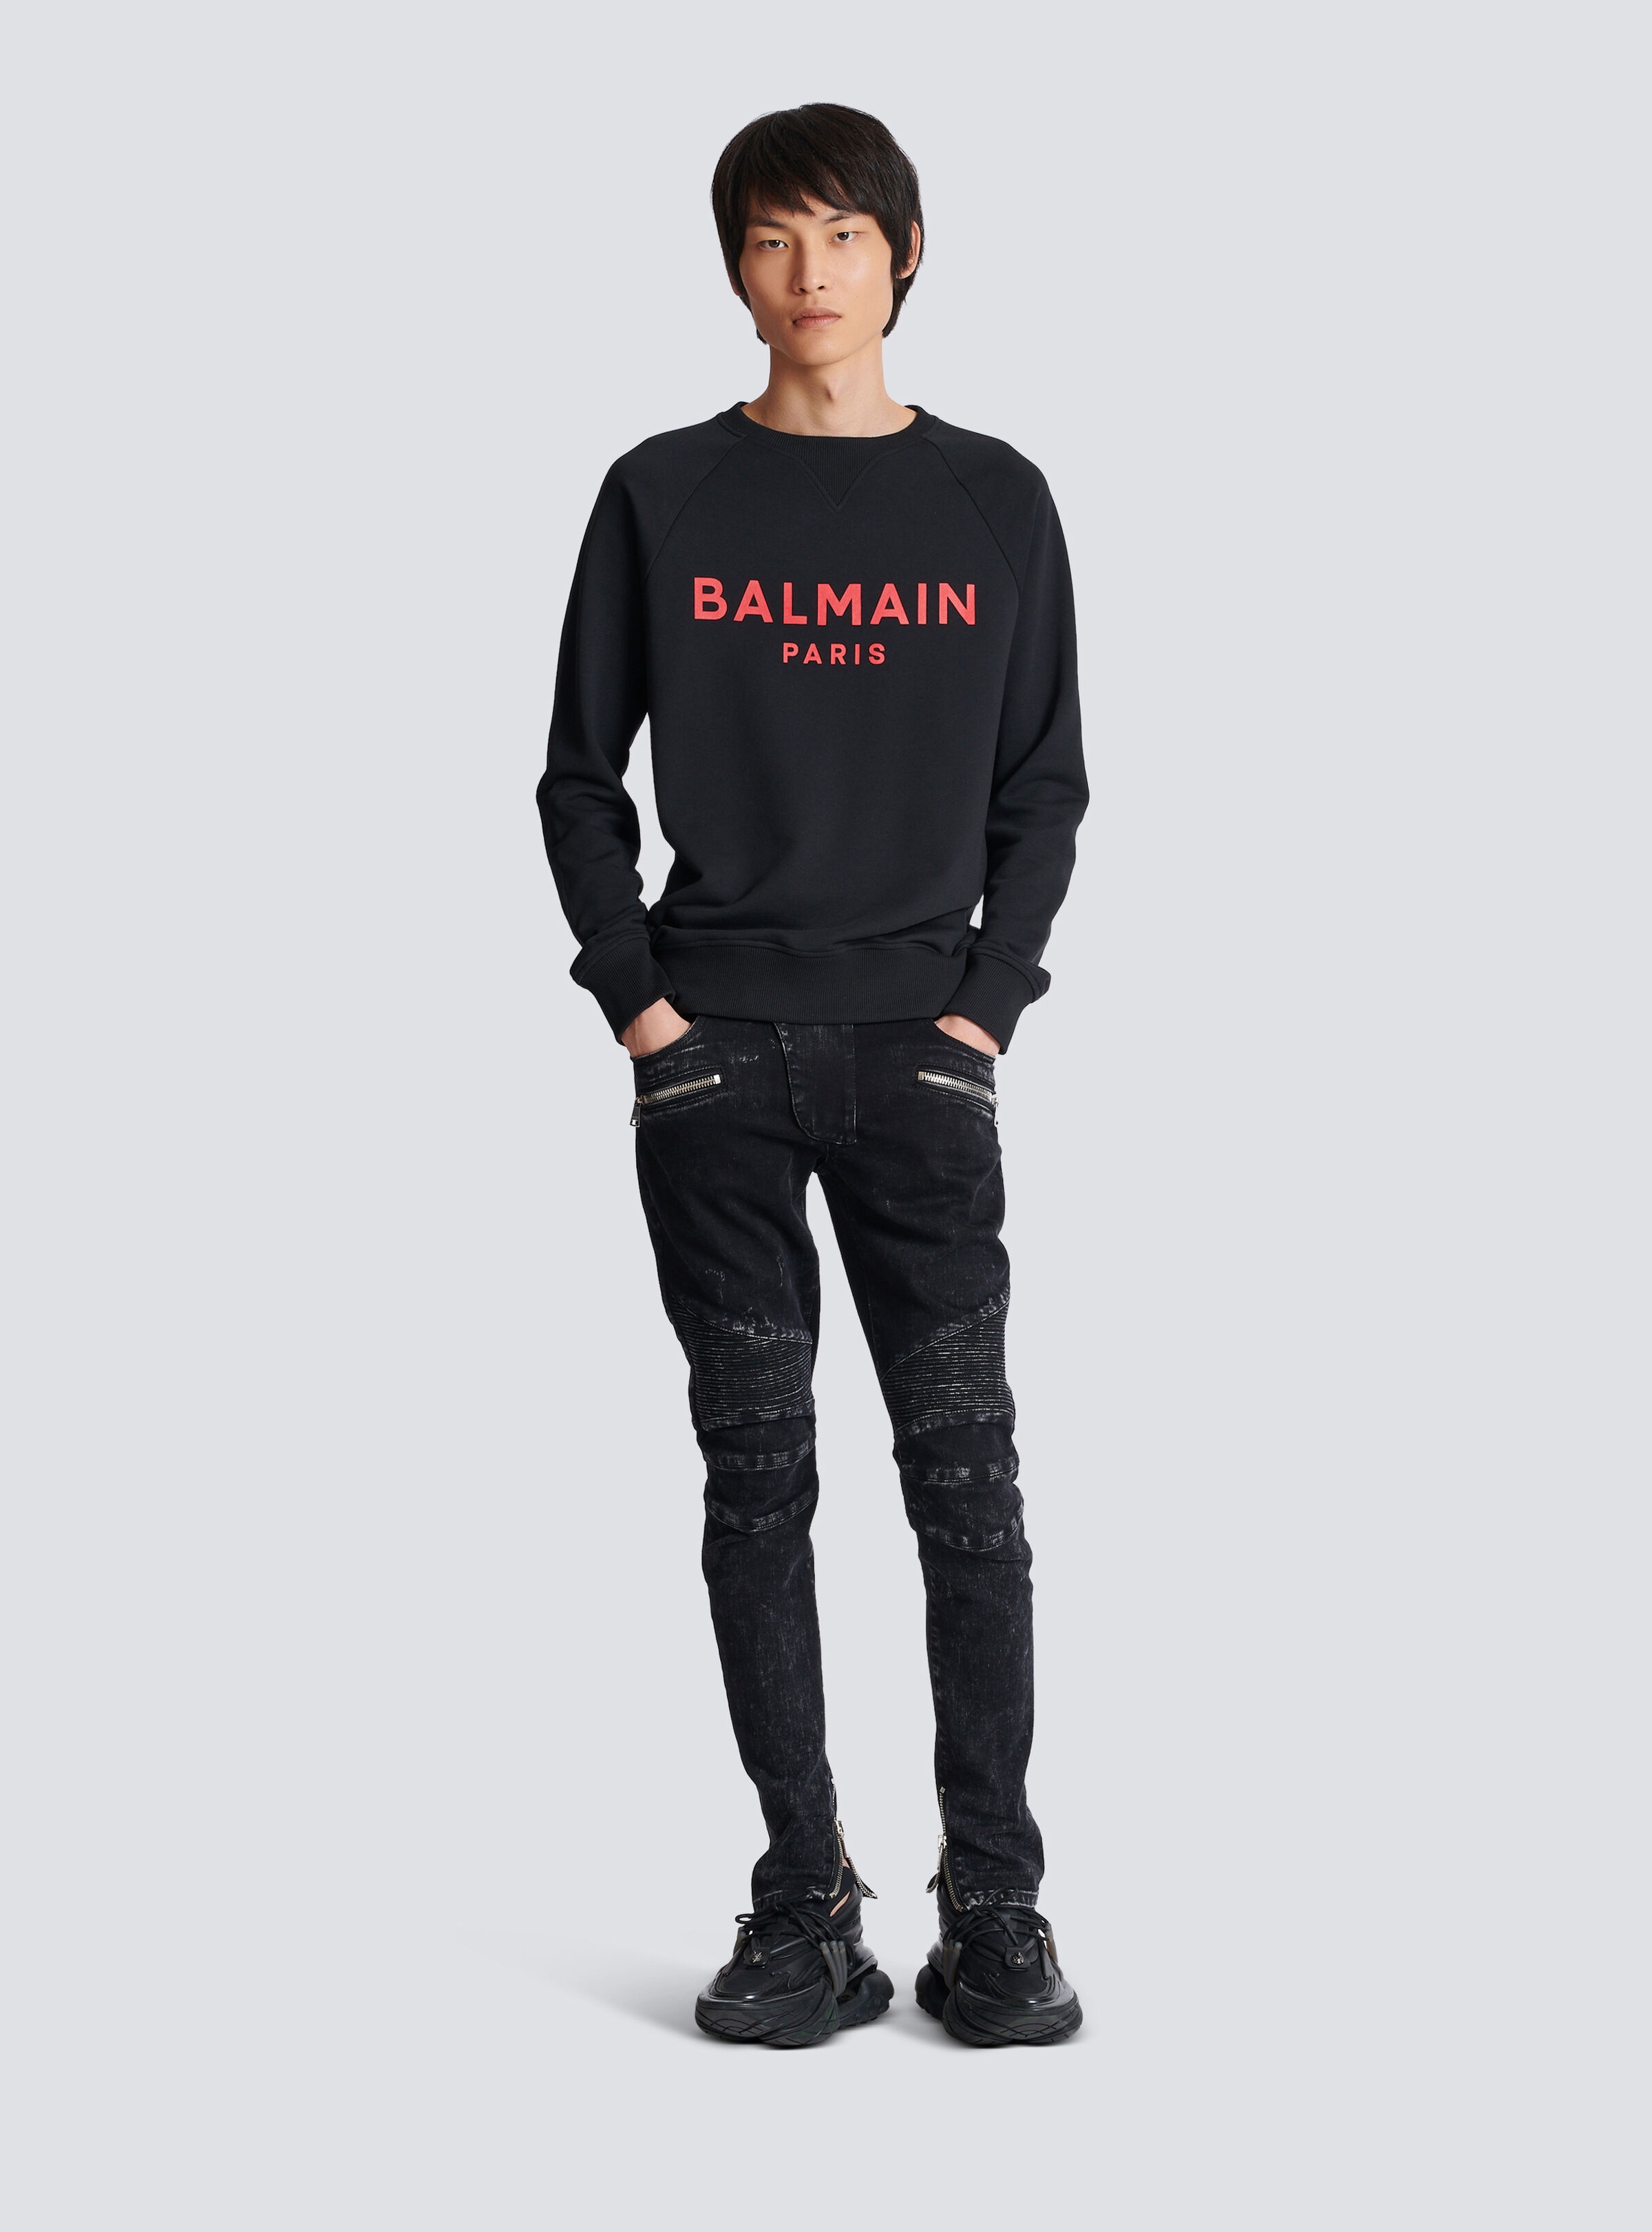 Balmain Paris printed sweatshirt - 2